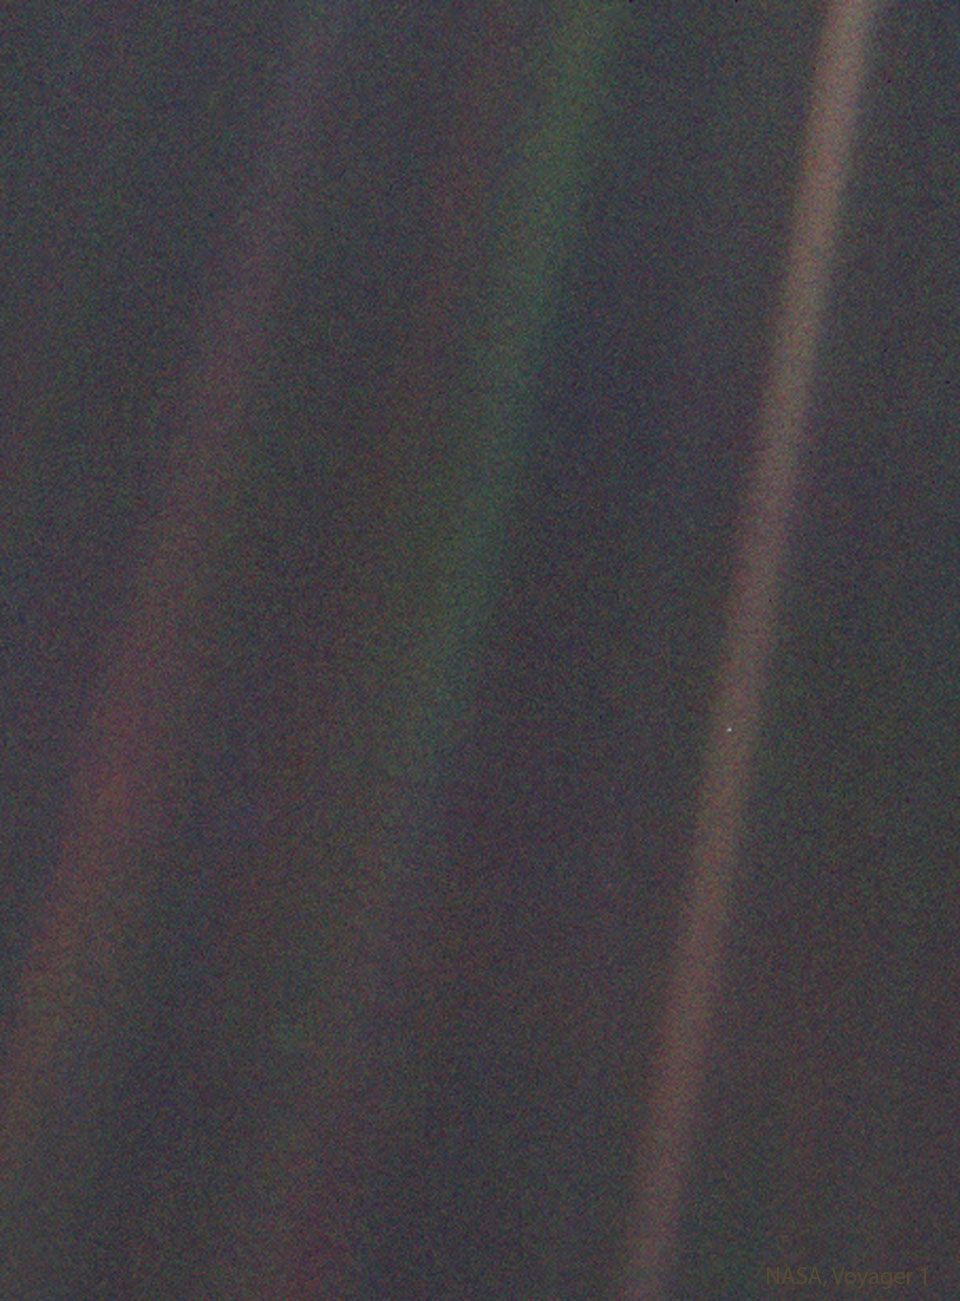 Der berühmte blassblaue Punkt - Pale Blue Dot - ist ein Bild der Erde, das die Raumsonde Voyager I im Jahr 1990 fotografierte.